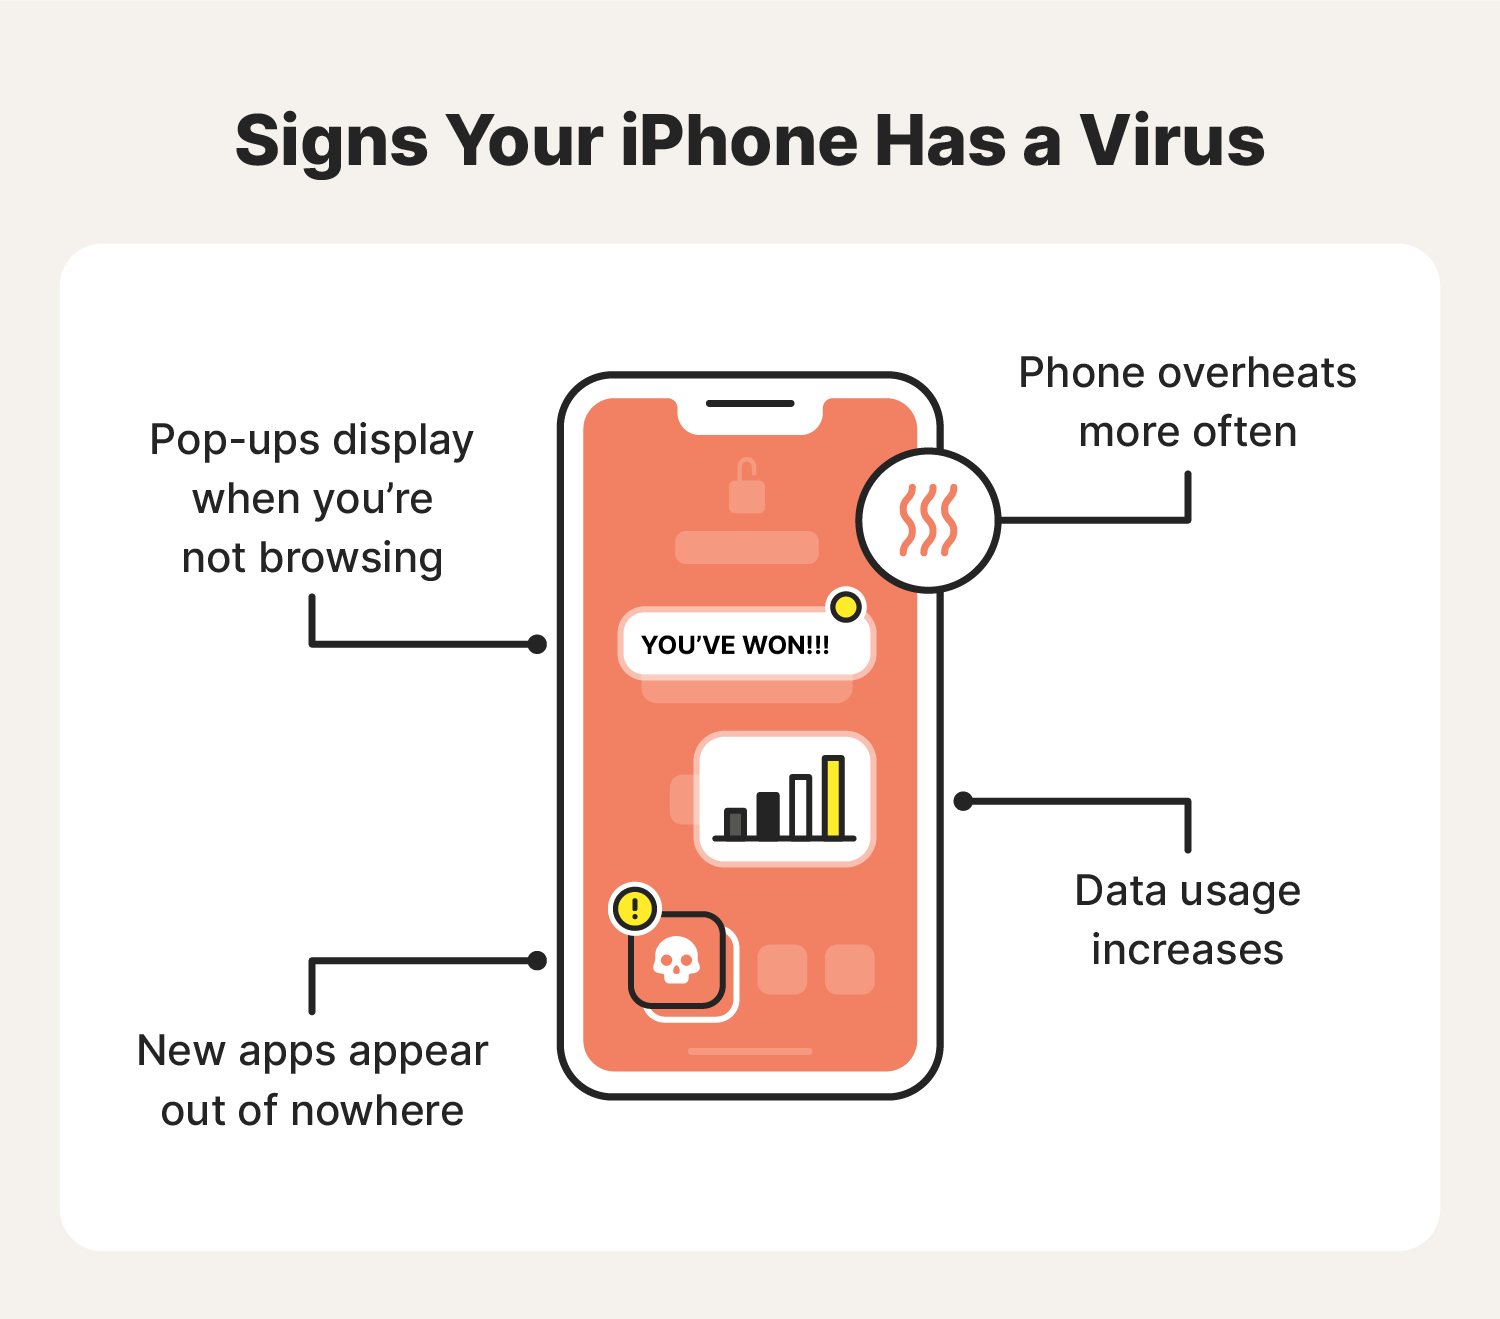 Do iPhones block viruses?